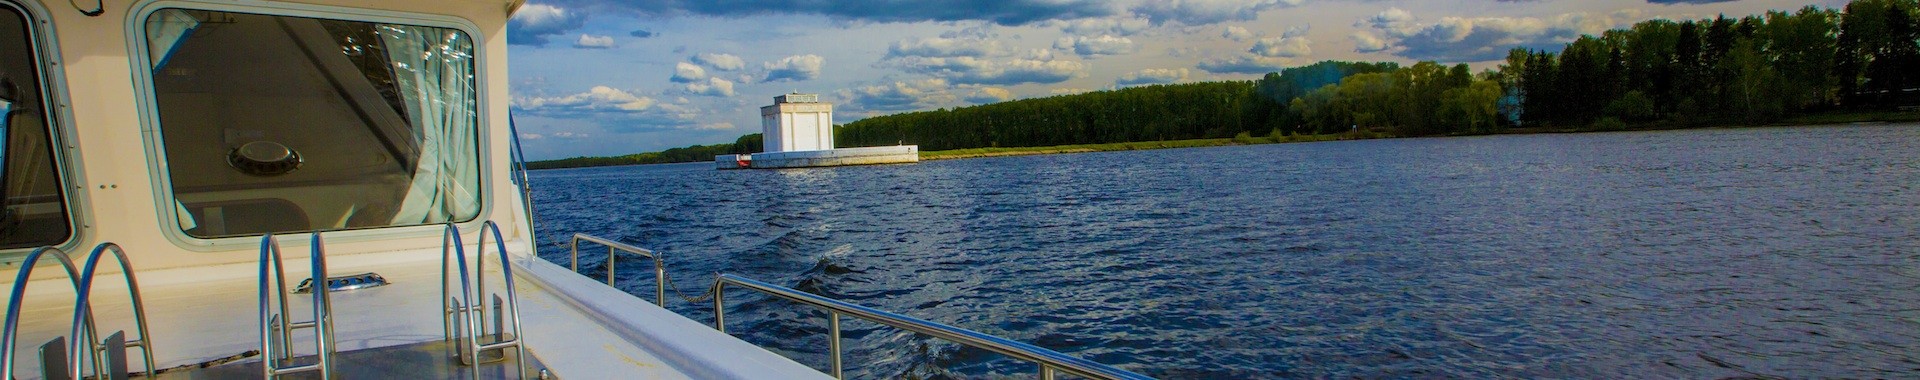 Речные прогулки на яхте по Москве и Подмосковью